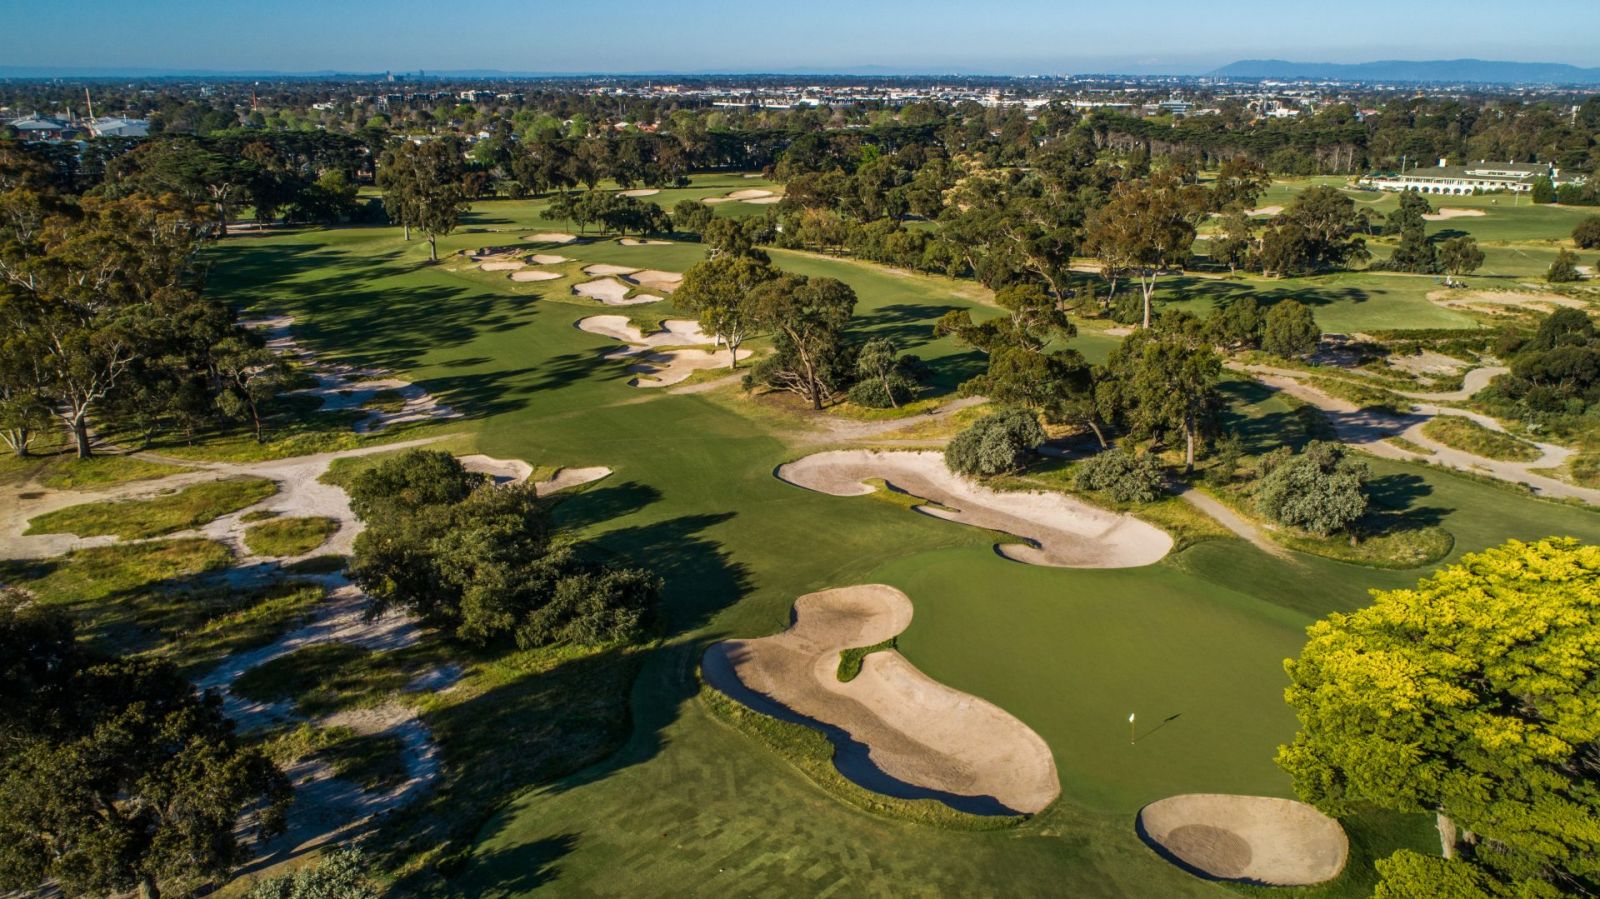 Ghé Úc độ vào xuân: Hành trình du lịch golf đẹp như mơ